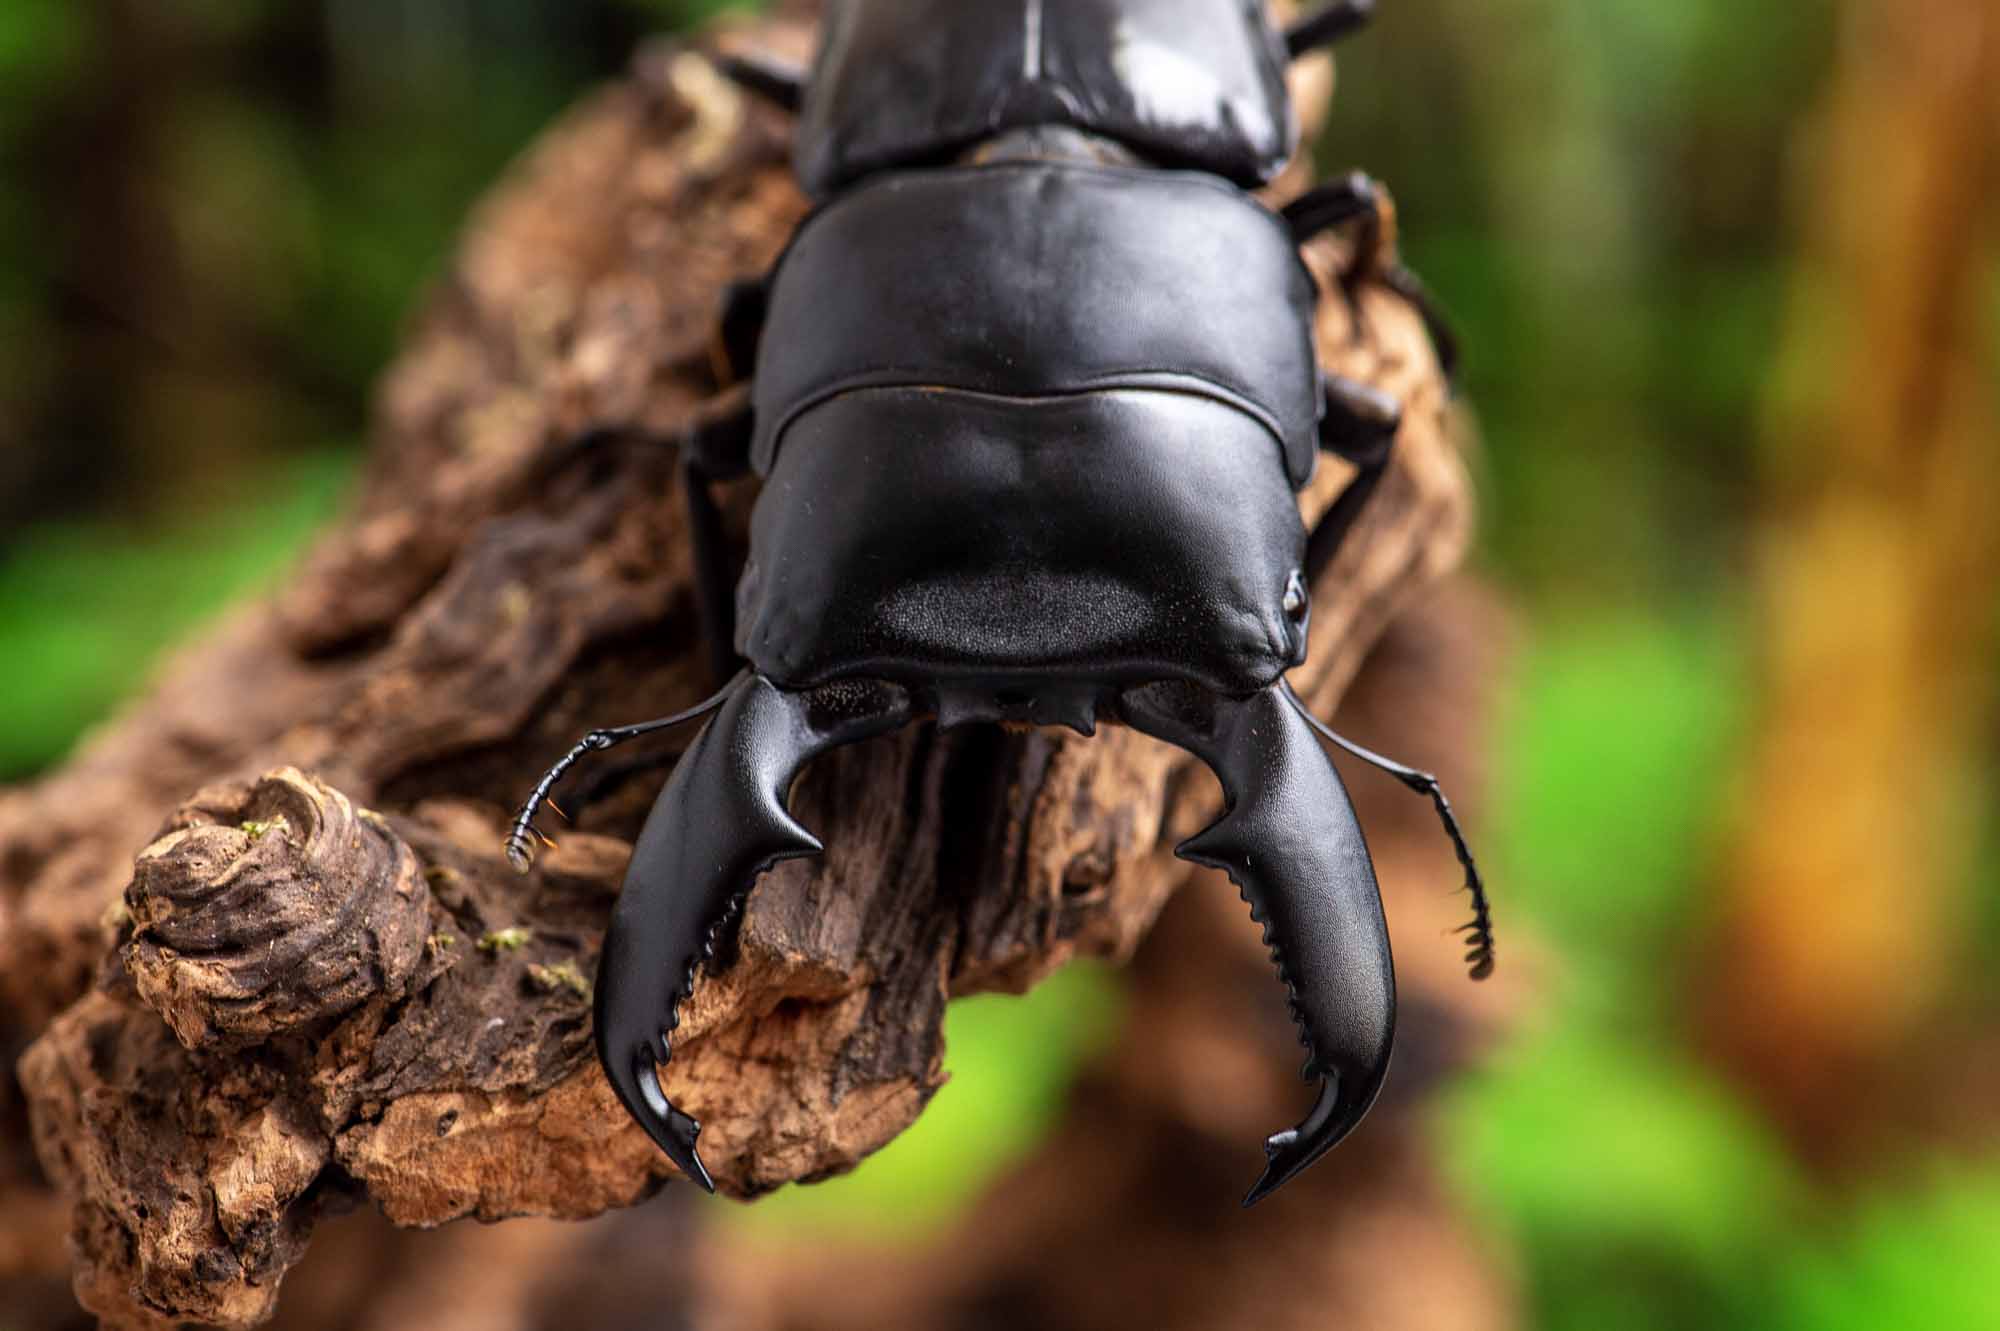 スマトラオオヒラタクワガタ 虫の写真と生態なら昆虫写真図鑑 ムシミル